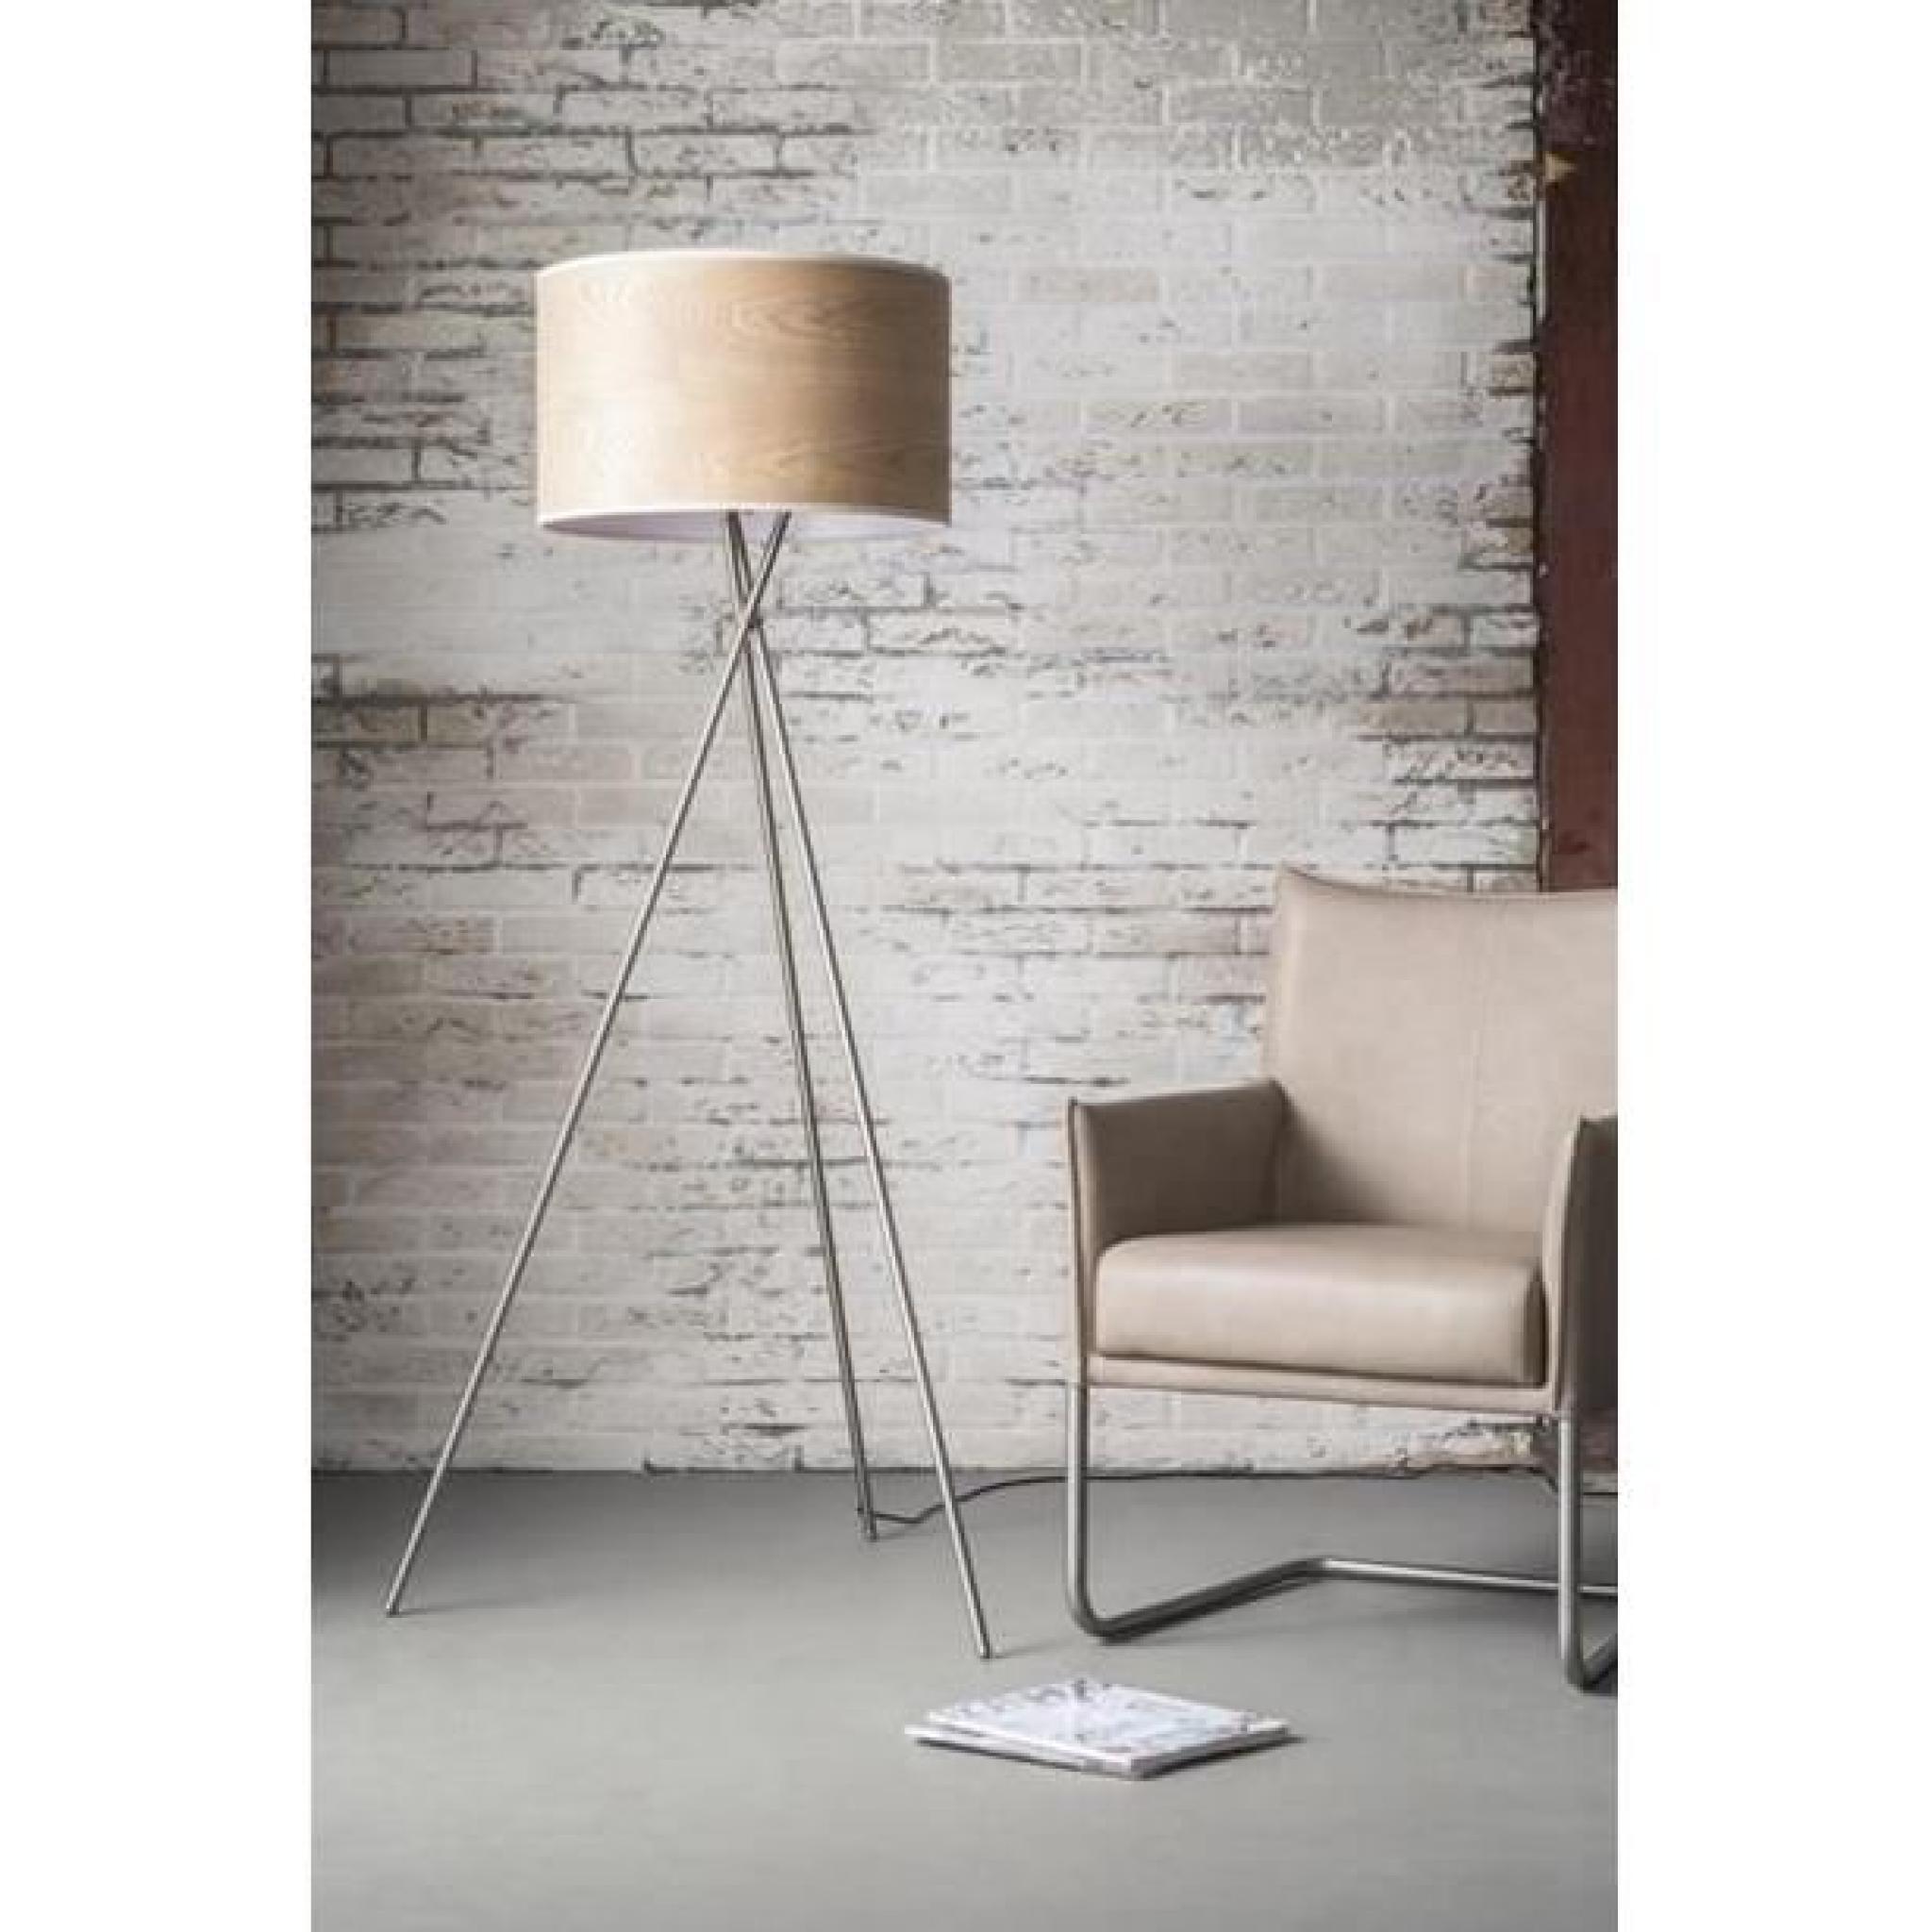 Pour un design éclatant de lumière, adoptez TICK comme le lampadaire. Ce lampadaire original en acier , doté d'un abat-jour cylin...